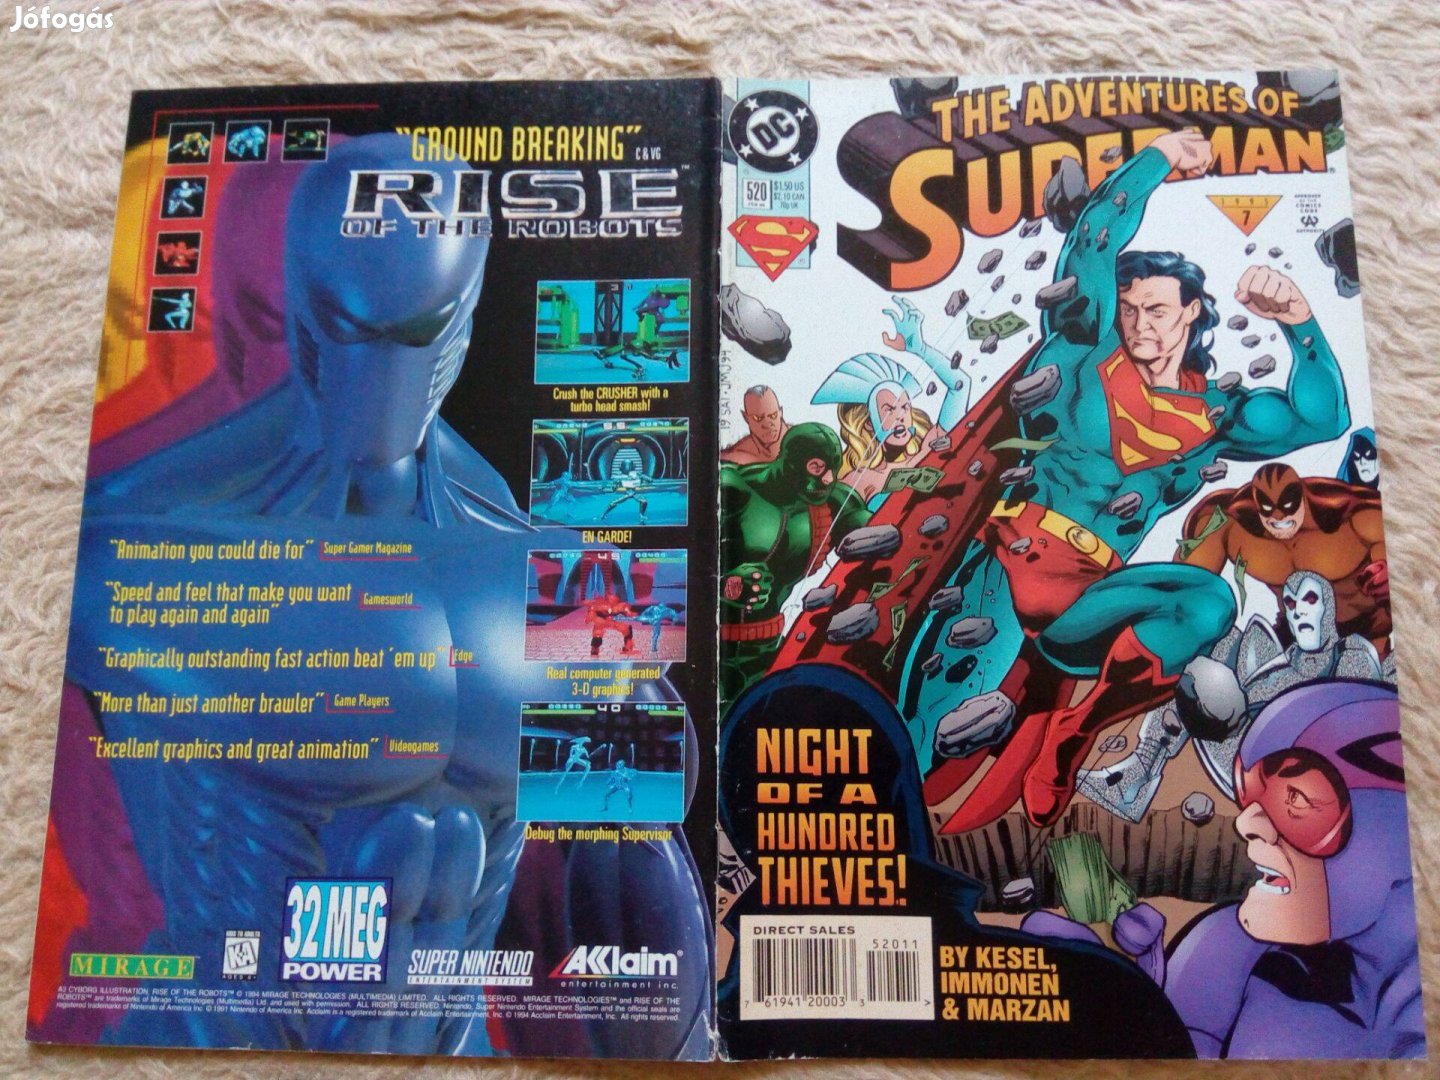 The adventures of Superman amerikai DC képregény 520. száma eladó!